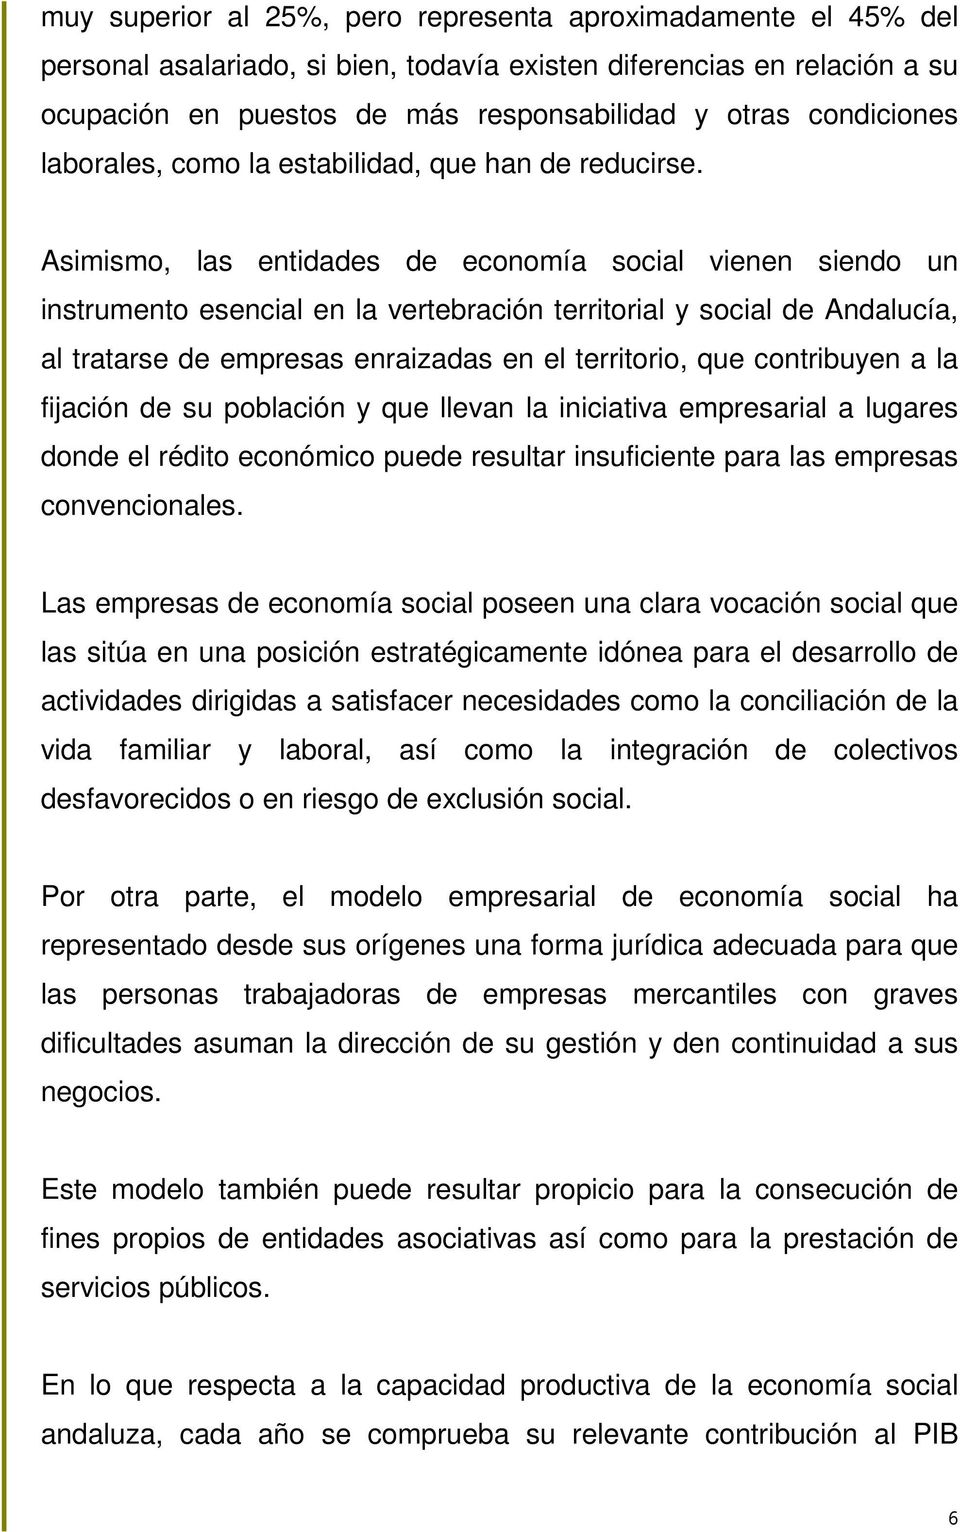 Asimismo, las entidades de economía social vienen siendo un instrumento esencial en la vertebración territorial y social de Andalucía, al tratarse de empresas enraizadas en el territorio, que